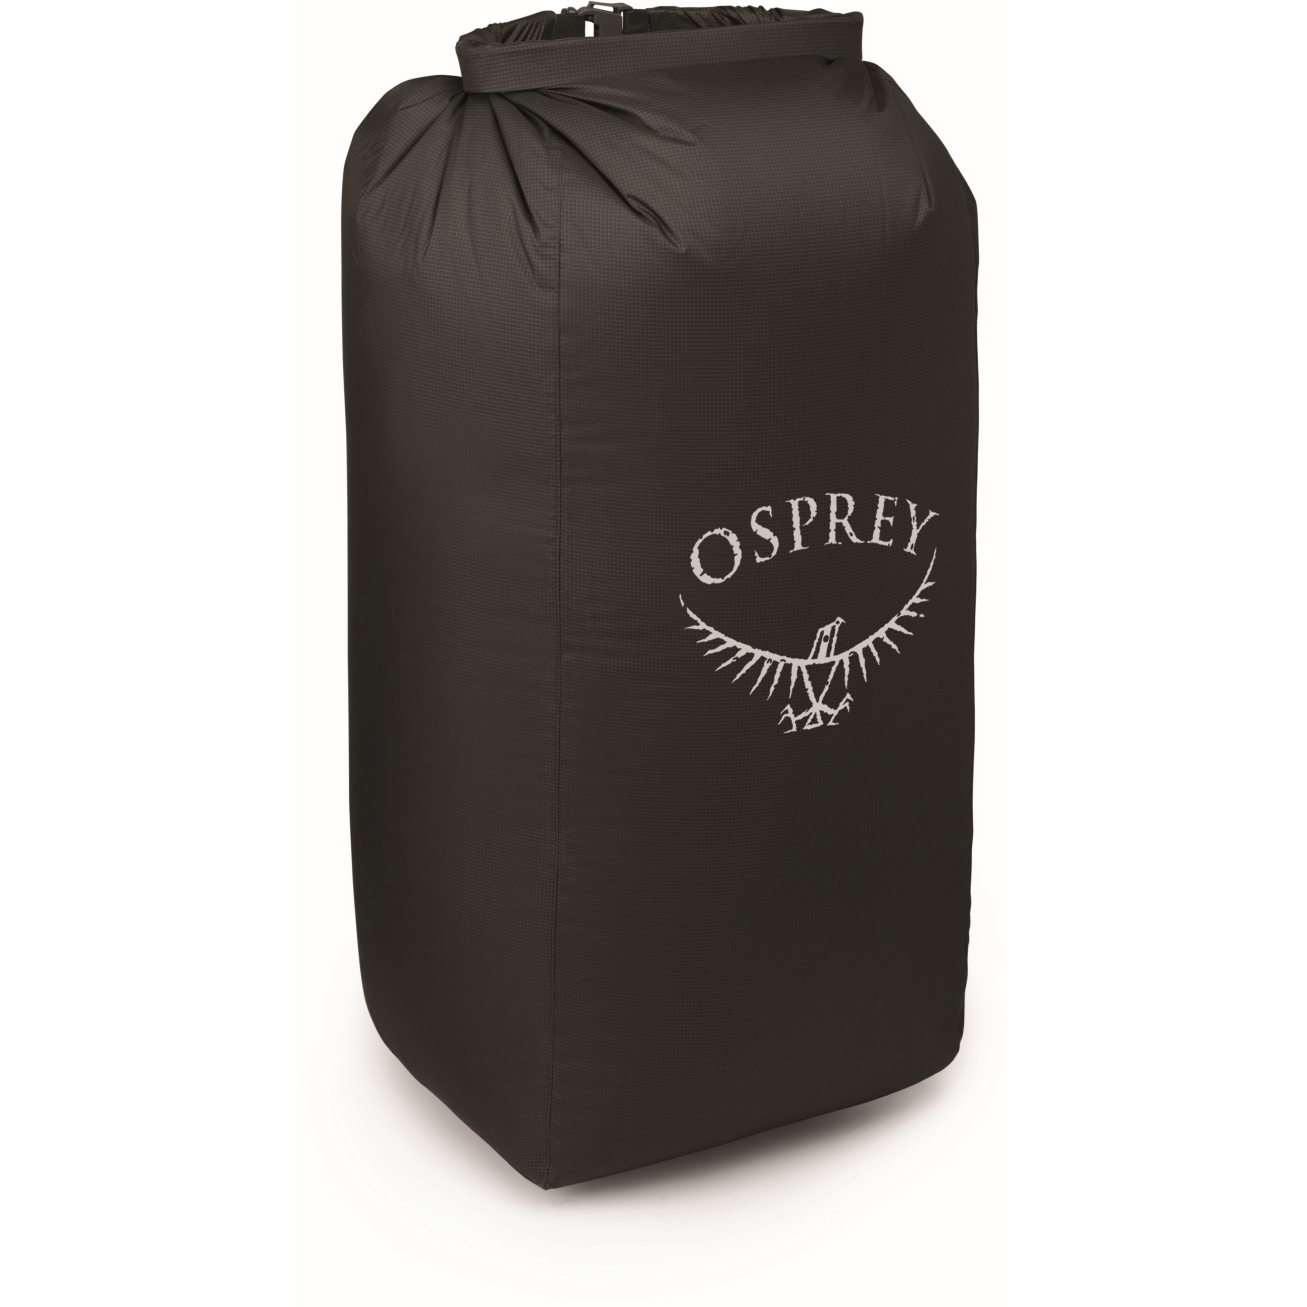 Picture of Osprey Ultralight Pack Liner L (70-100L) - Black